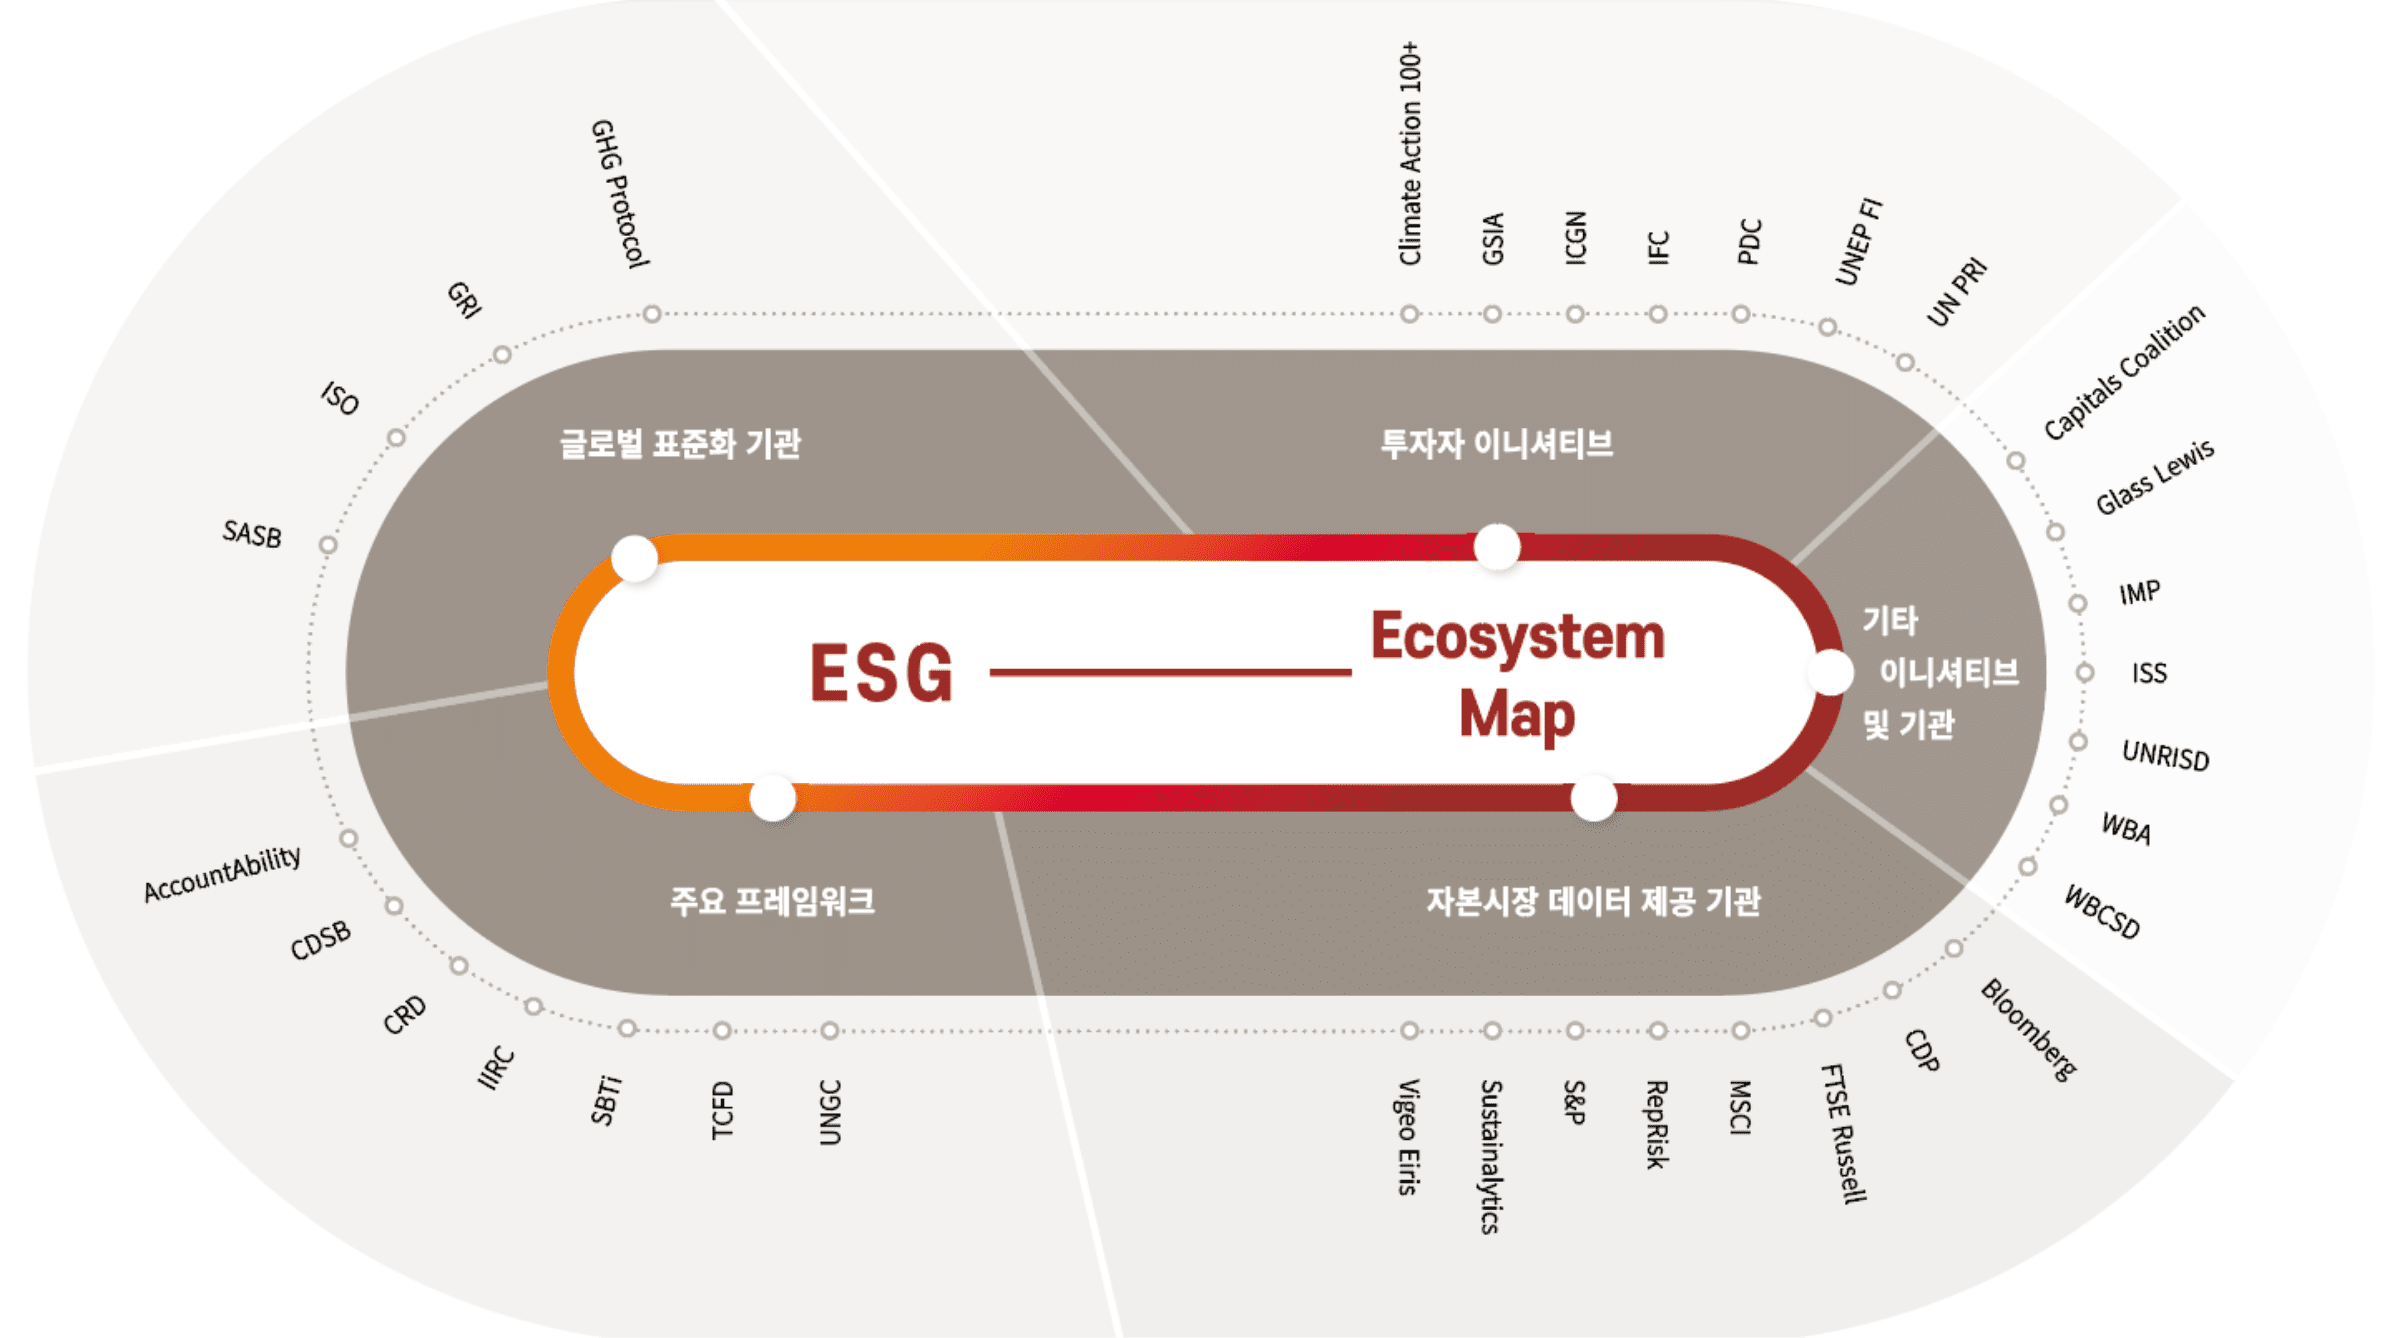 ESG 생태계에 대한 이해 : Ecosystem Map